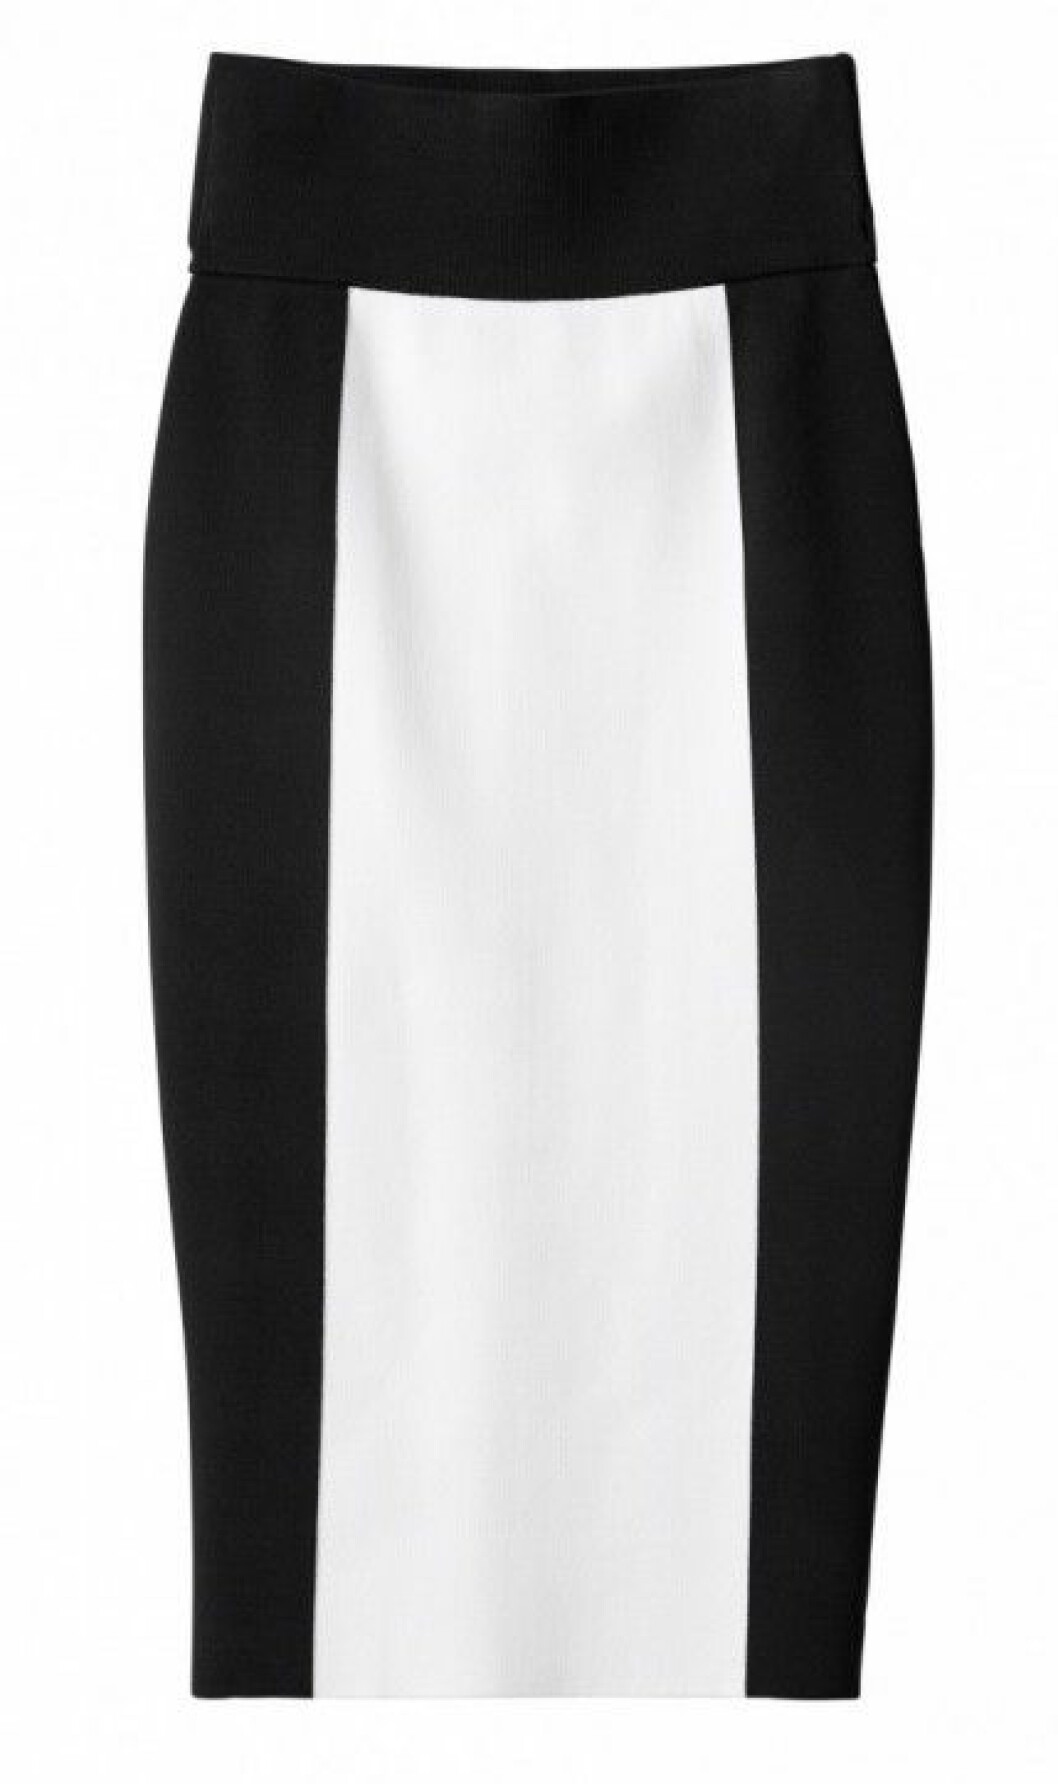 h&m balmain svart kjol vit